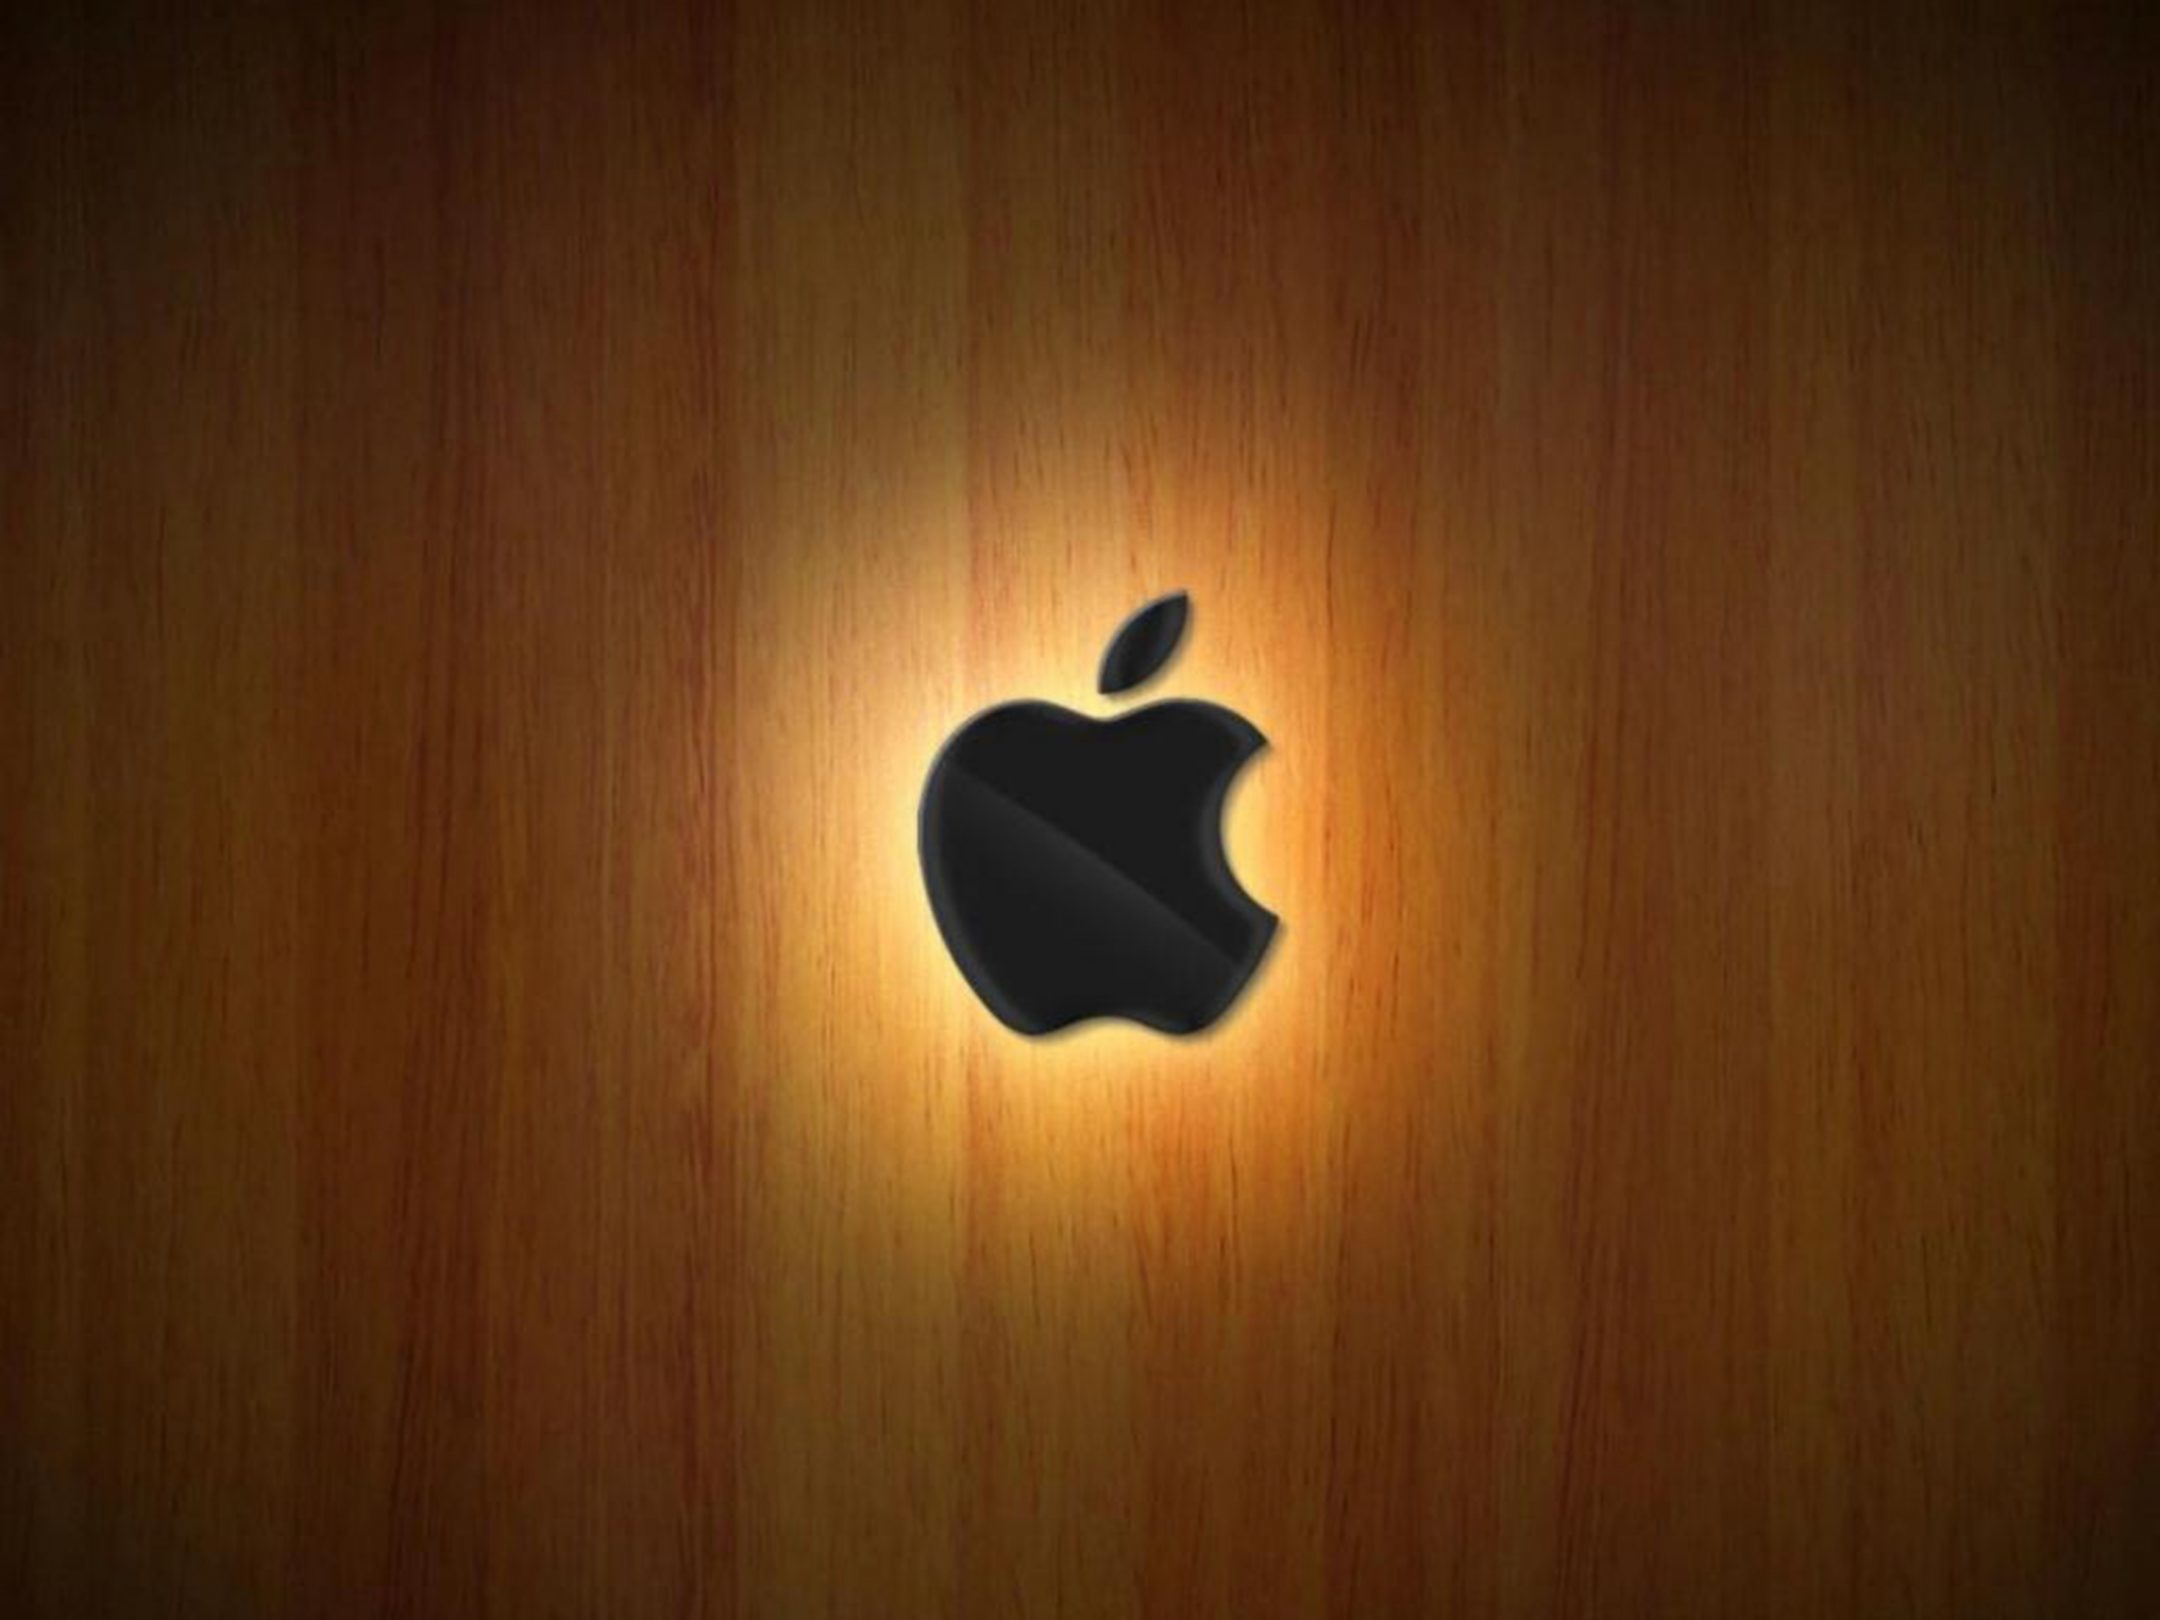 2160x1620 iPad wallpaper 4k Apple Logo Wood Ipad Wallpaper 2160x1620 pixels resolution